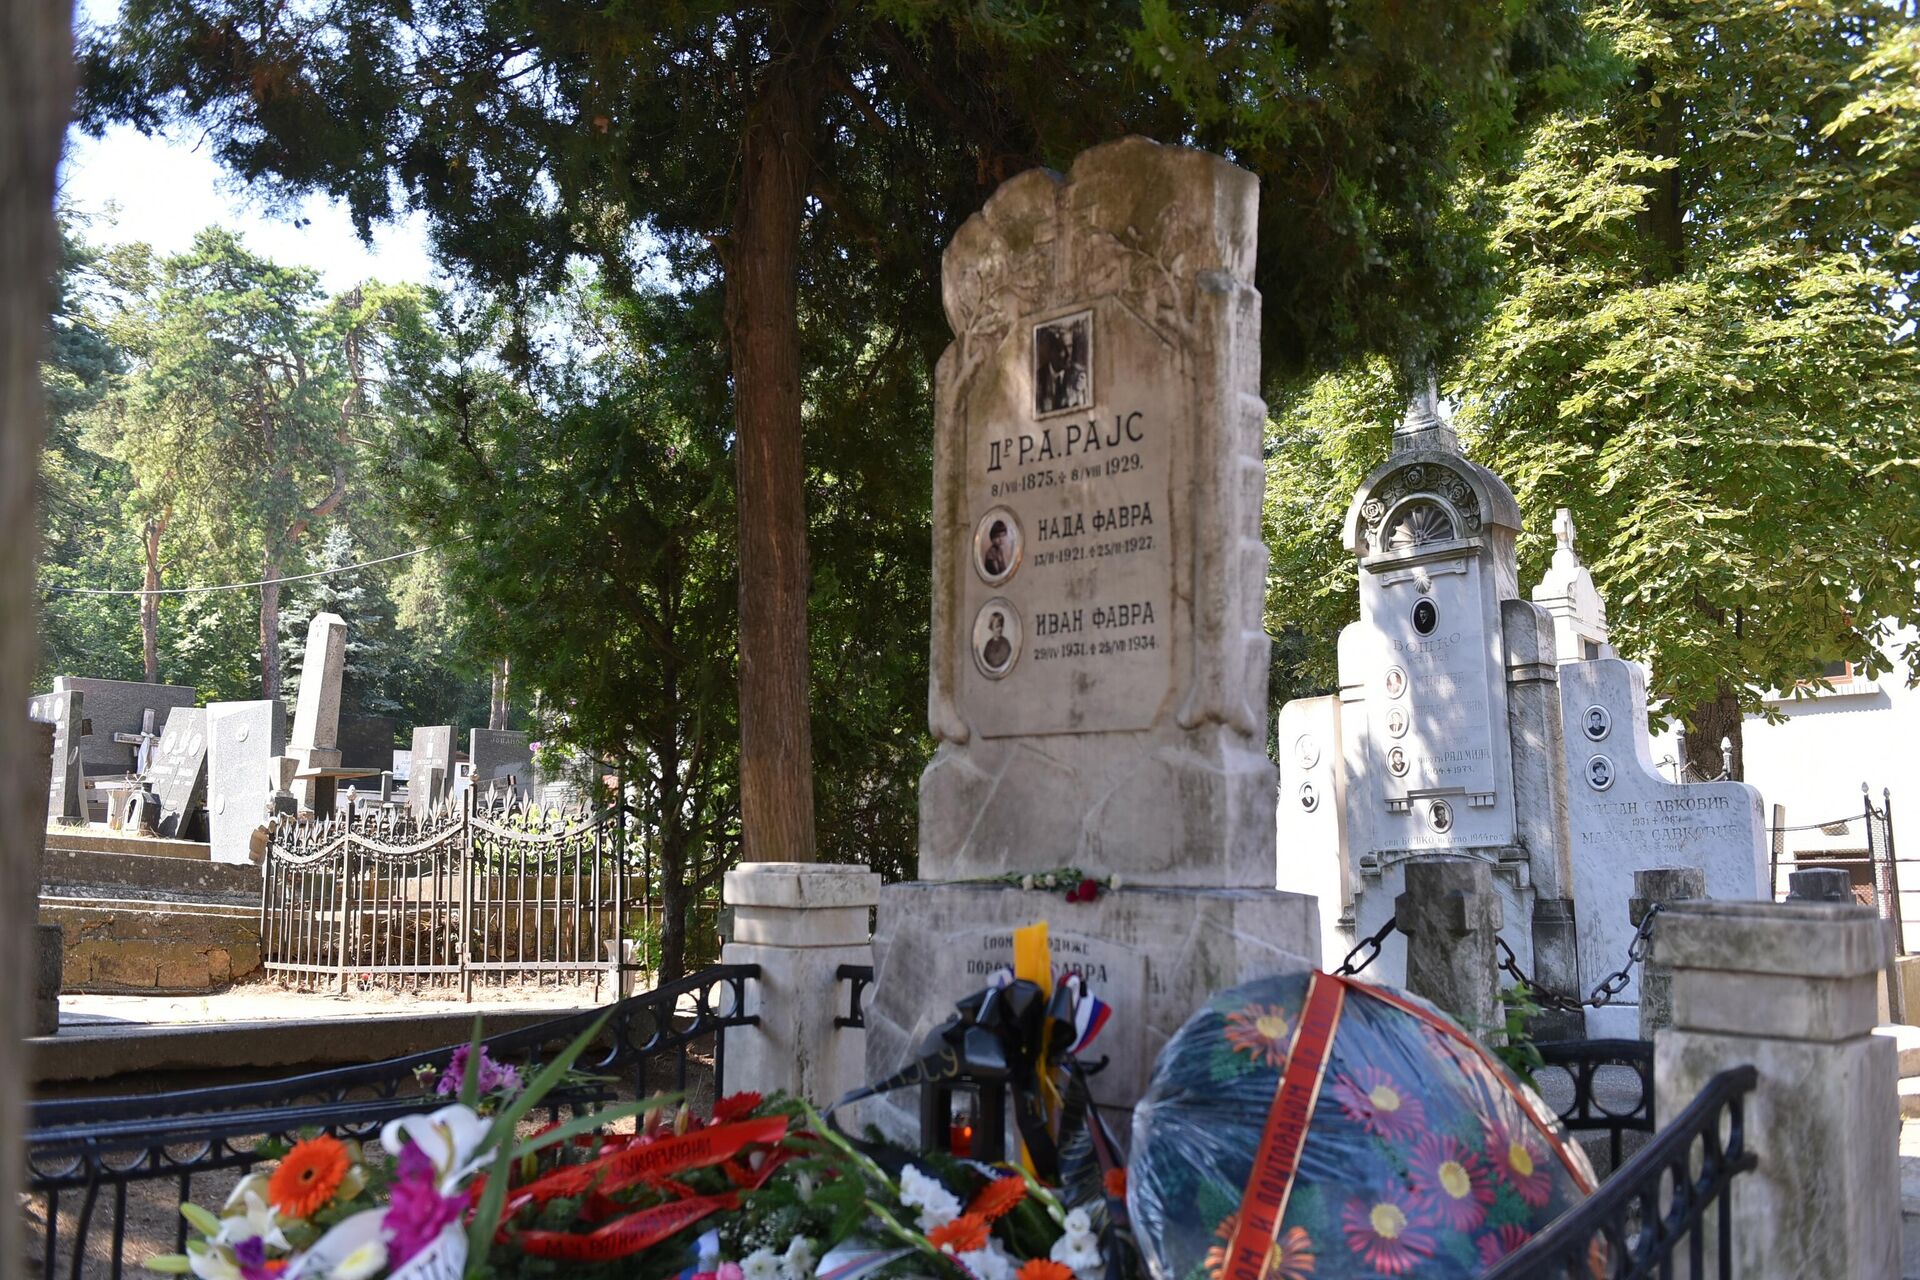 Grob Arčibalda Rajsa na Topčideru - Sputnik Srbija, 1920, 08.08.2021